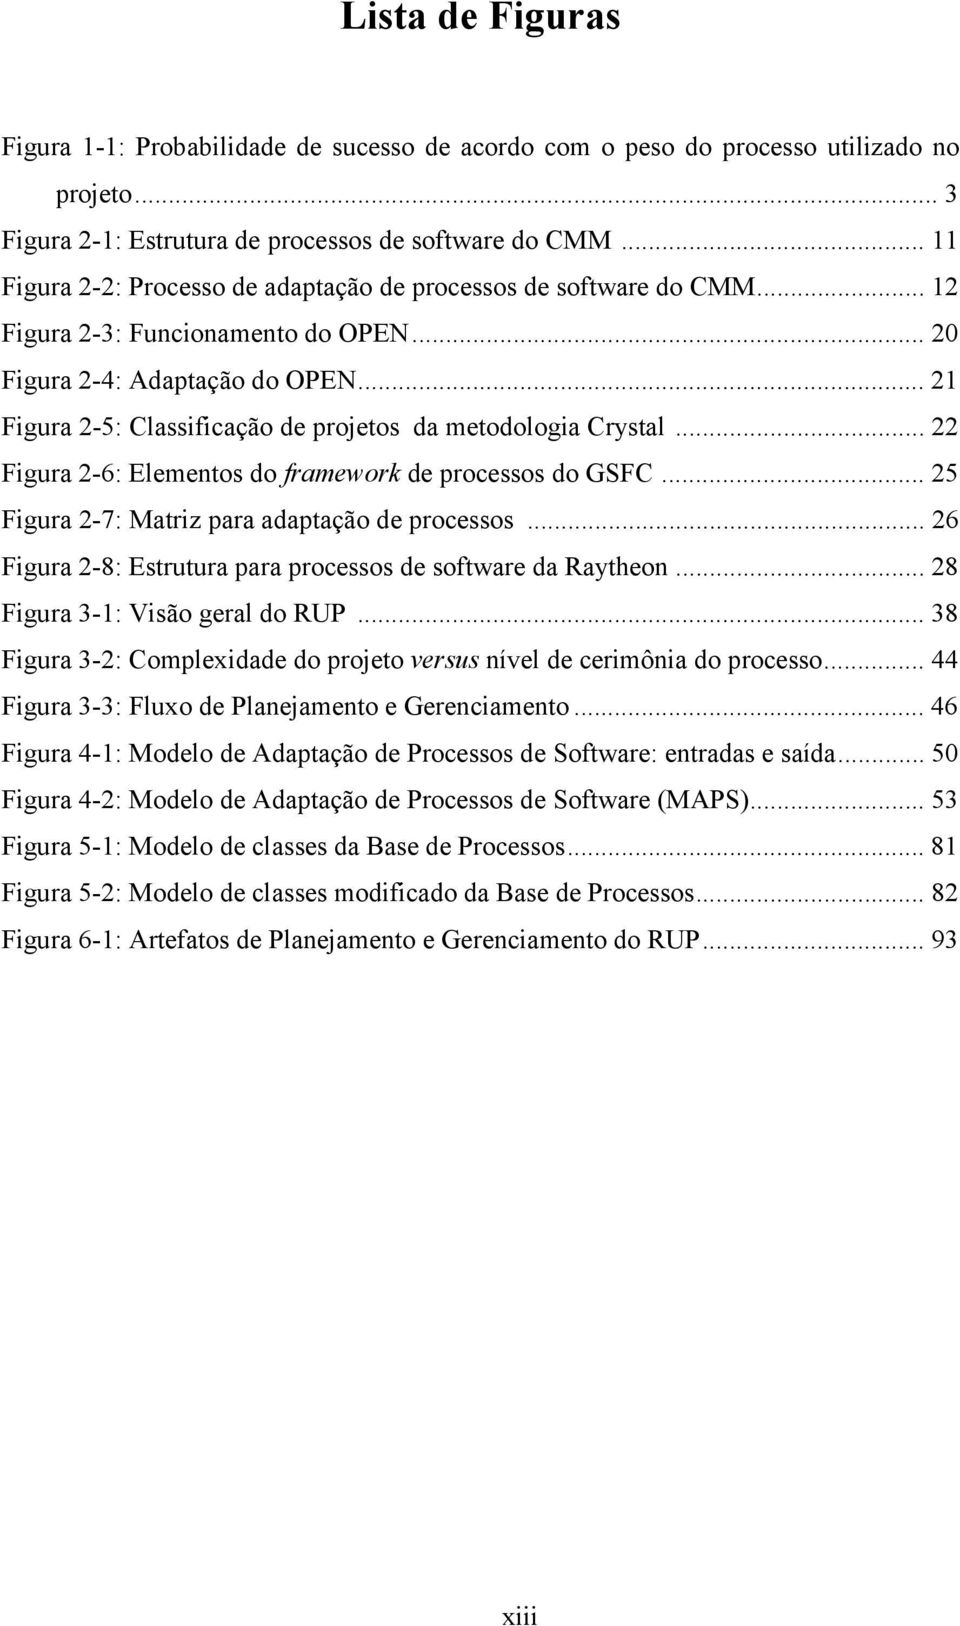 .. 21 Figura 2-5: Classificação de projetos da metodologia Crystal... 22 Figura 2-6: Elementos do framework de processos do GSFC... 25 Figura 2-7: Matriz para adaptação de processos.